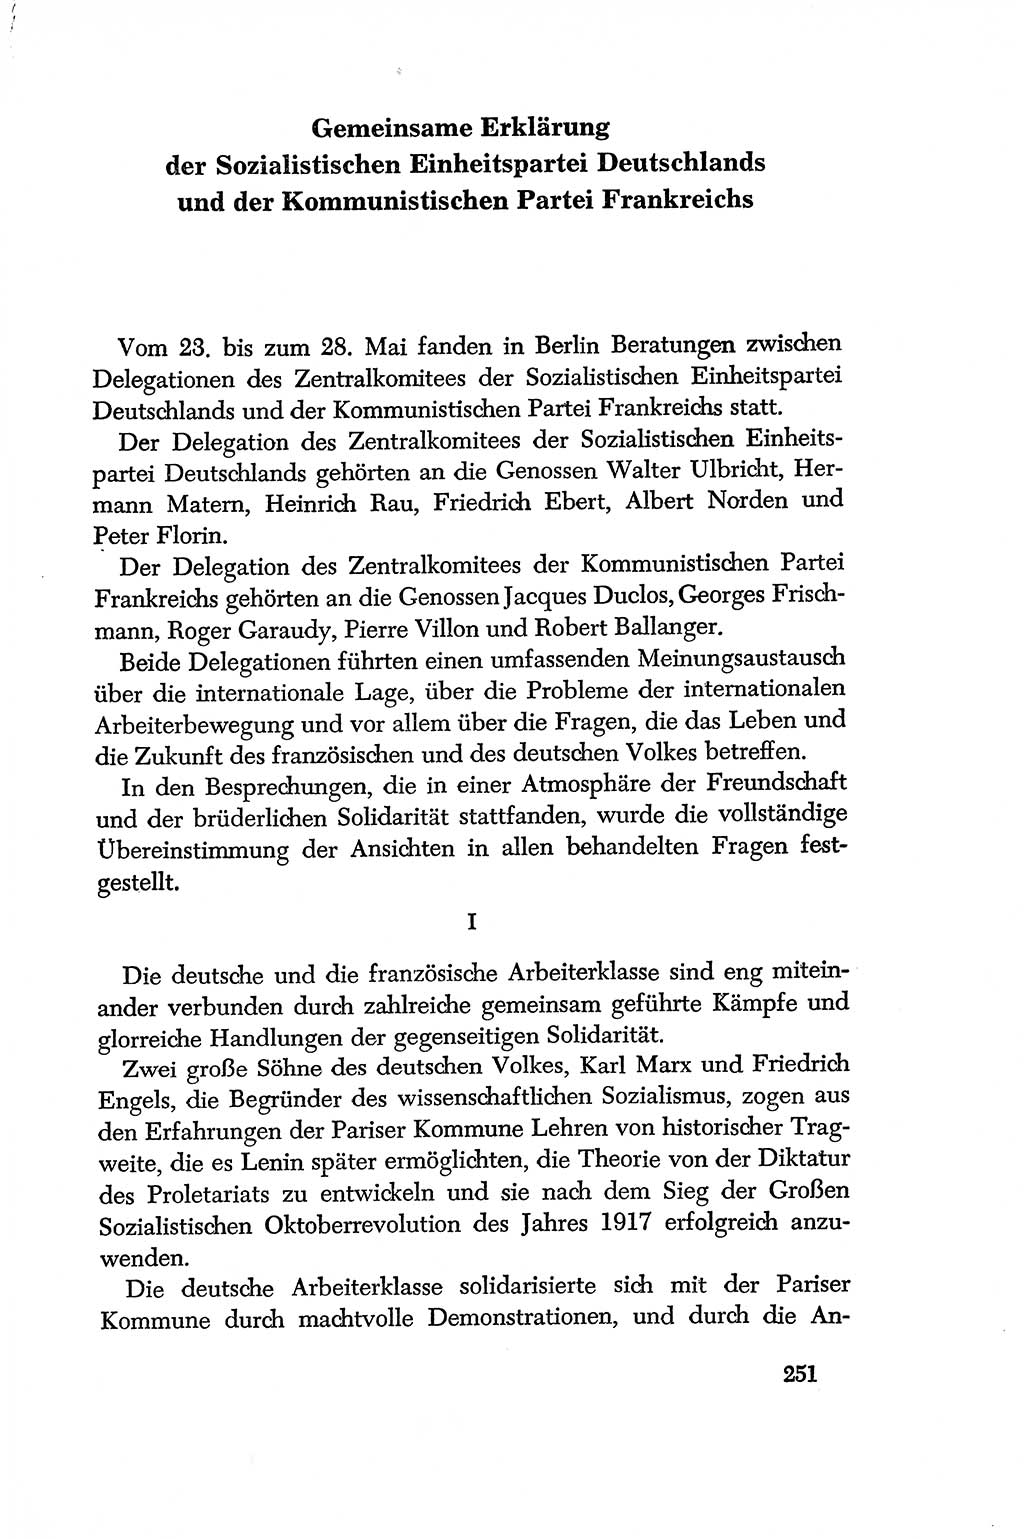 Dokumente der Sozialistischen Einheitspartei Deutschlands (SED) [Deutsche Demokratische Republik (DDR)] 1956-1957, Seite 251 (Dok. SED DDR 1956-1957, S. 251)